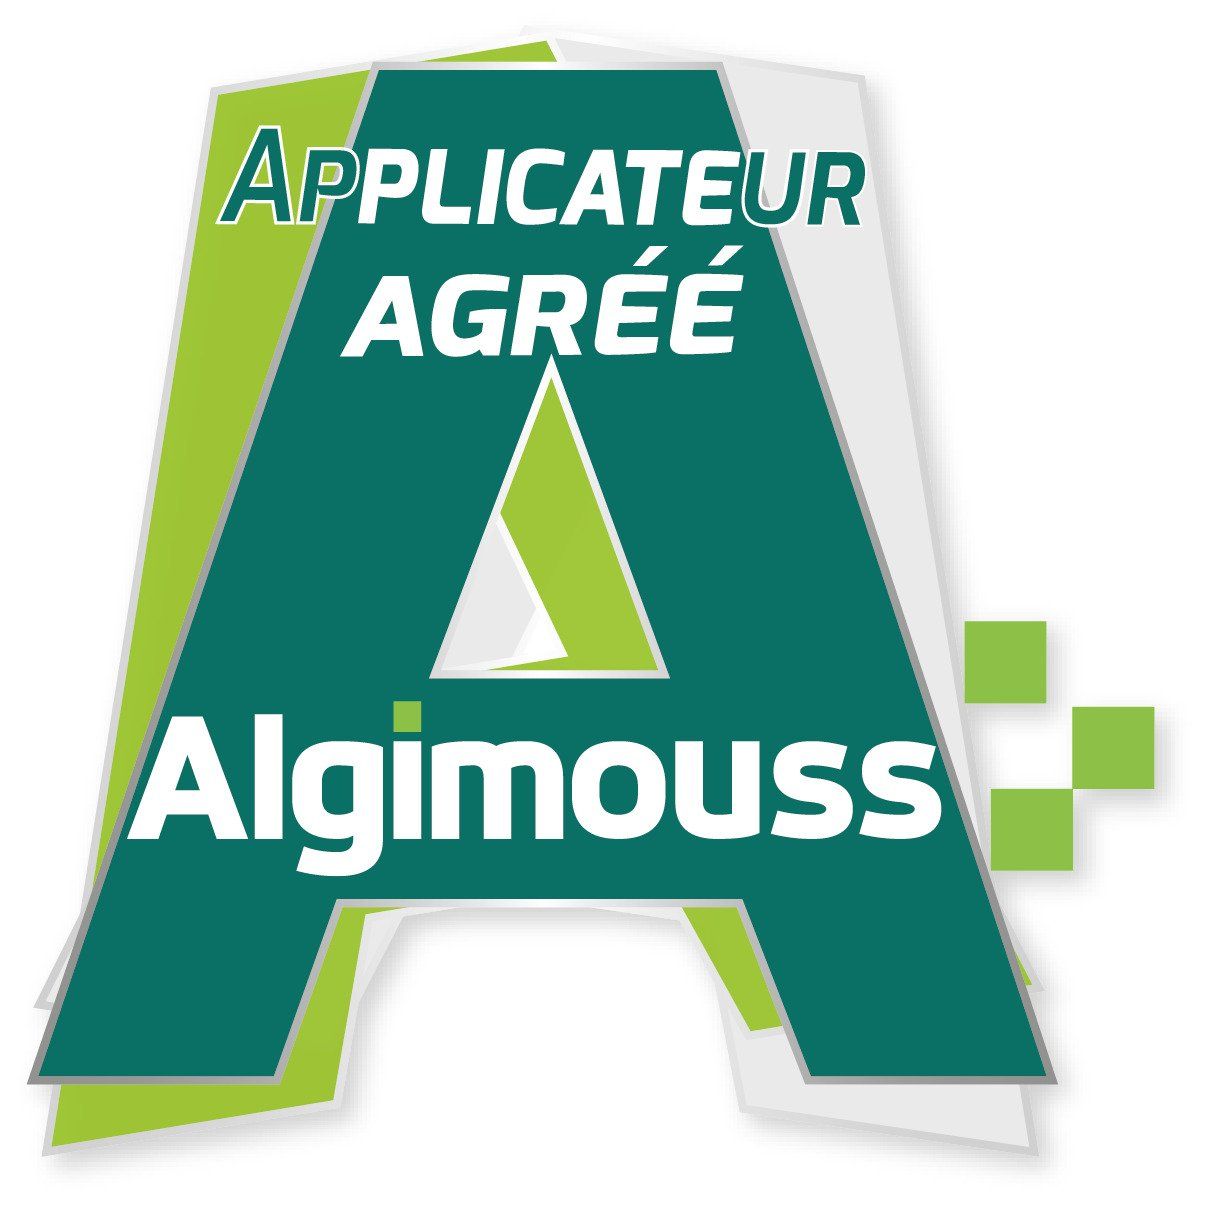 Algimouss